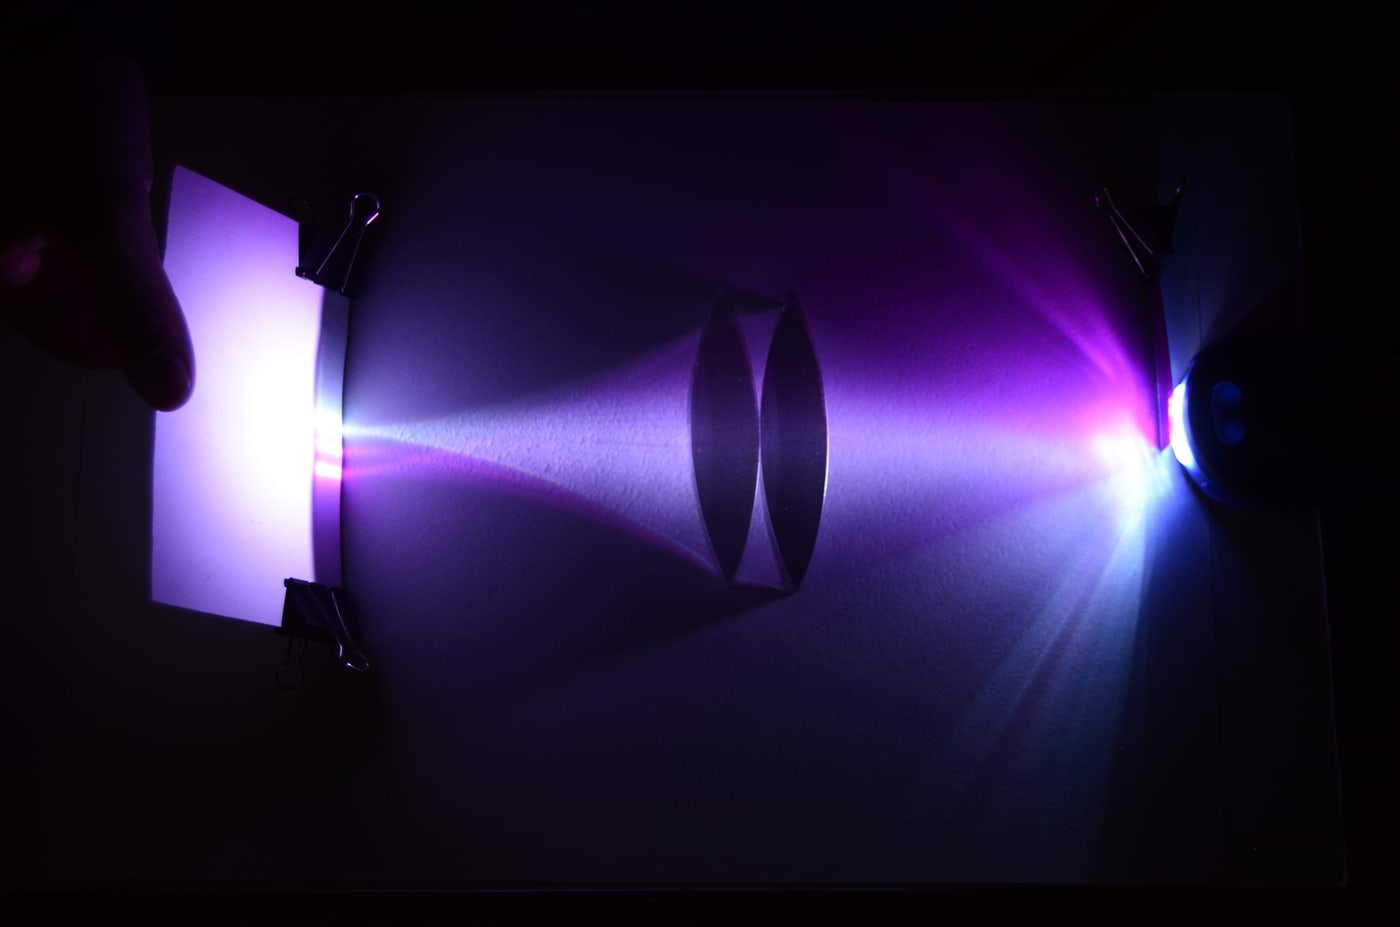 Kujutis kahe kumerläätsega, magenta valgusfilter kahe objekti valguse ees